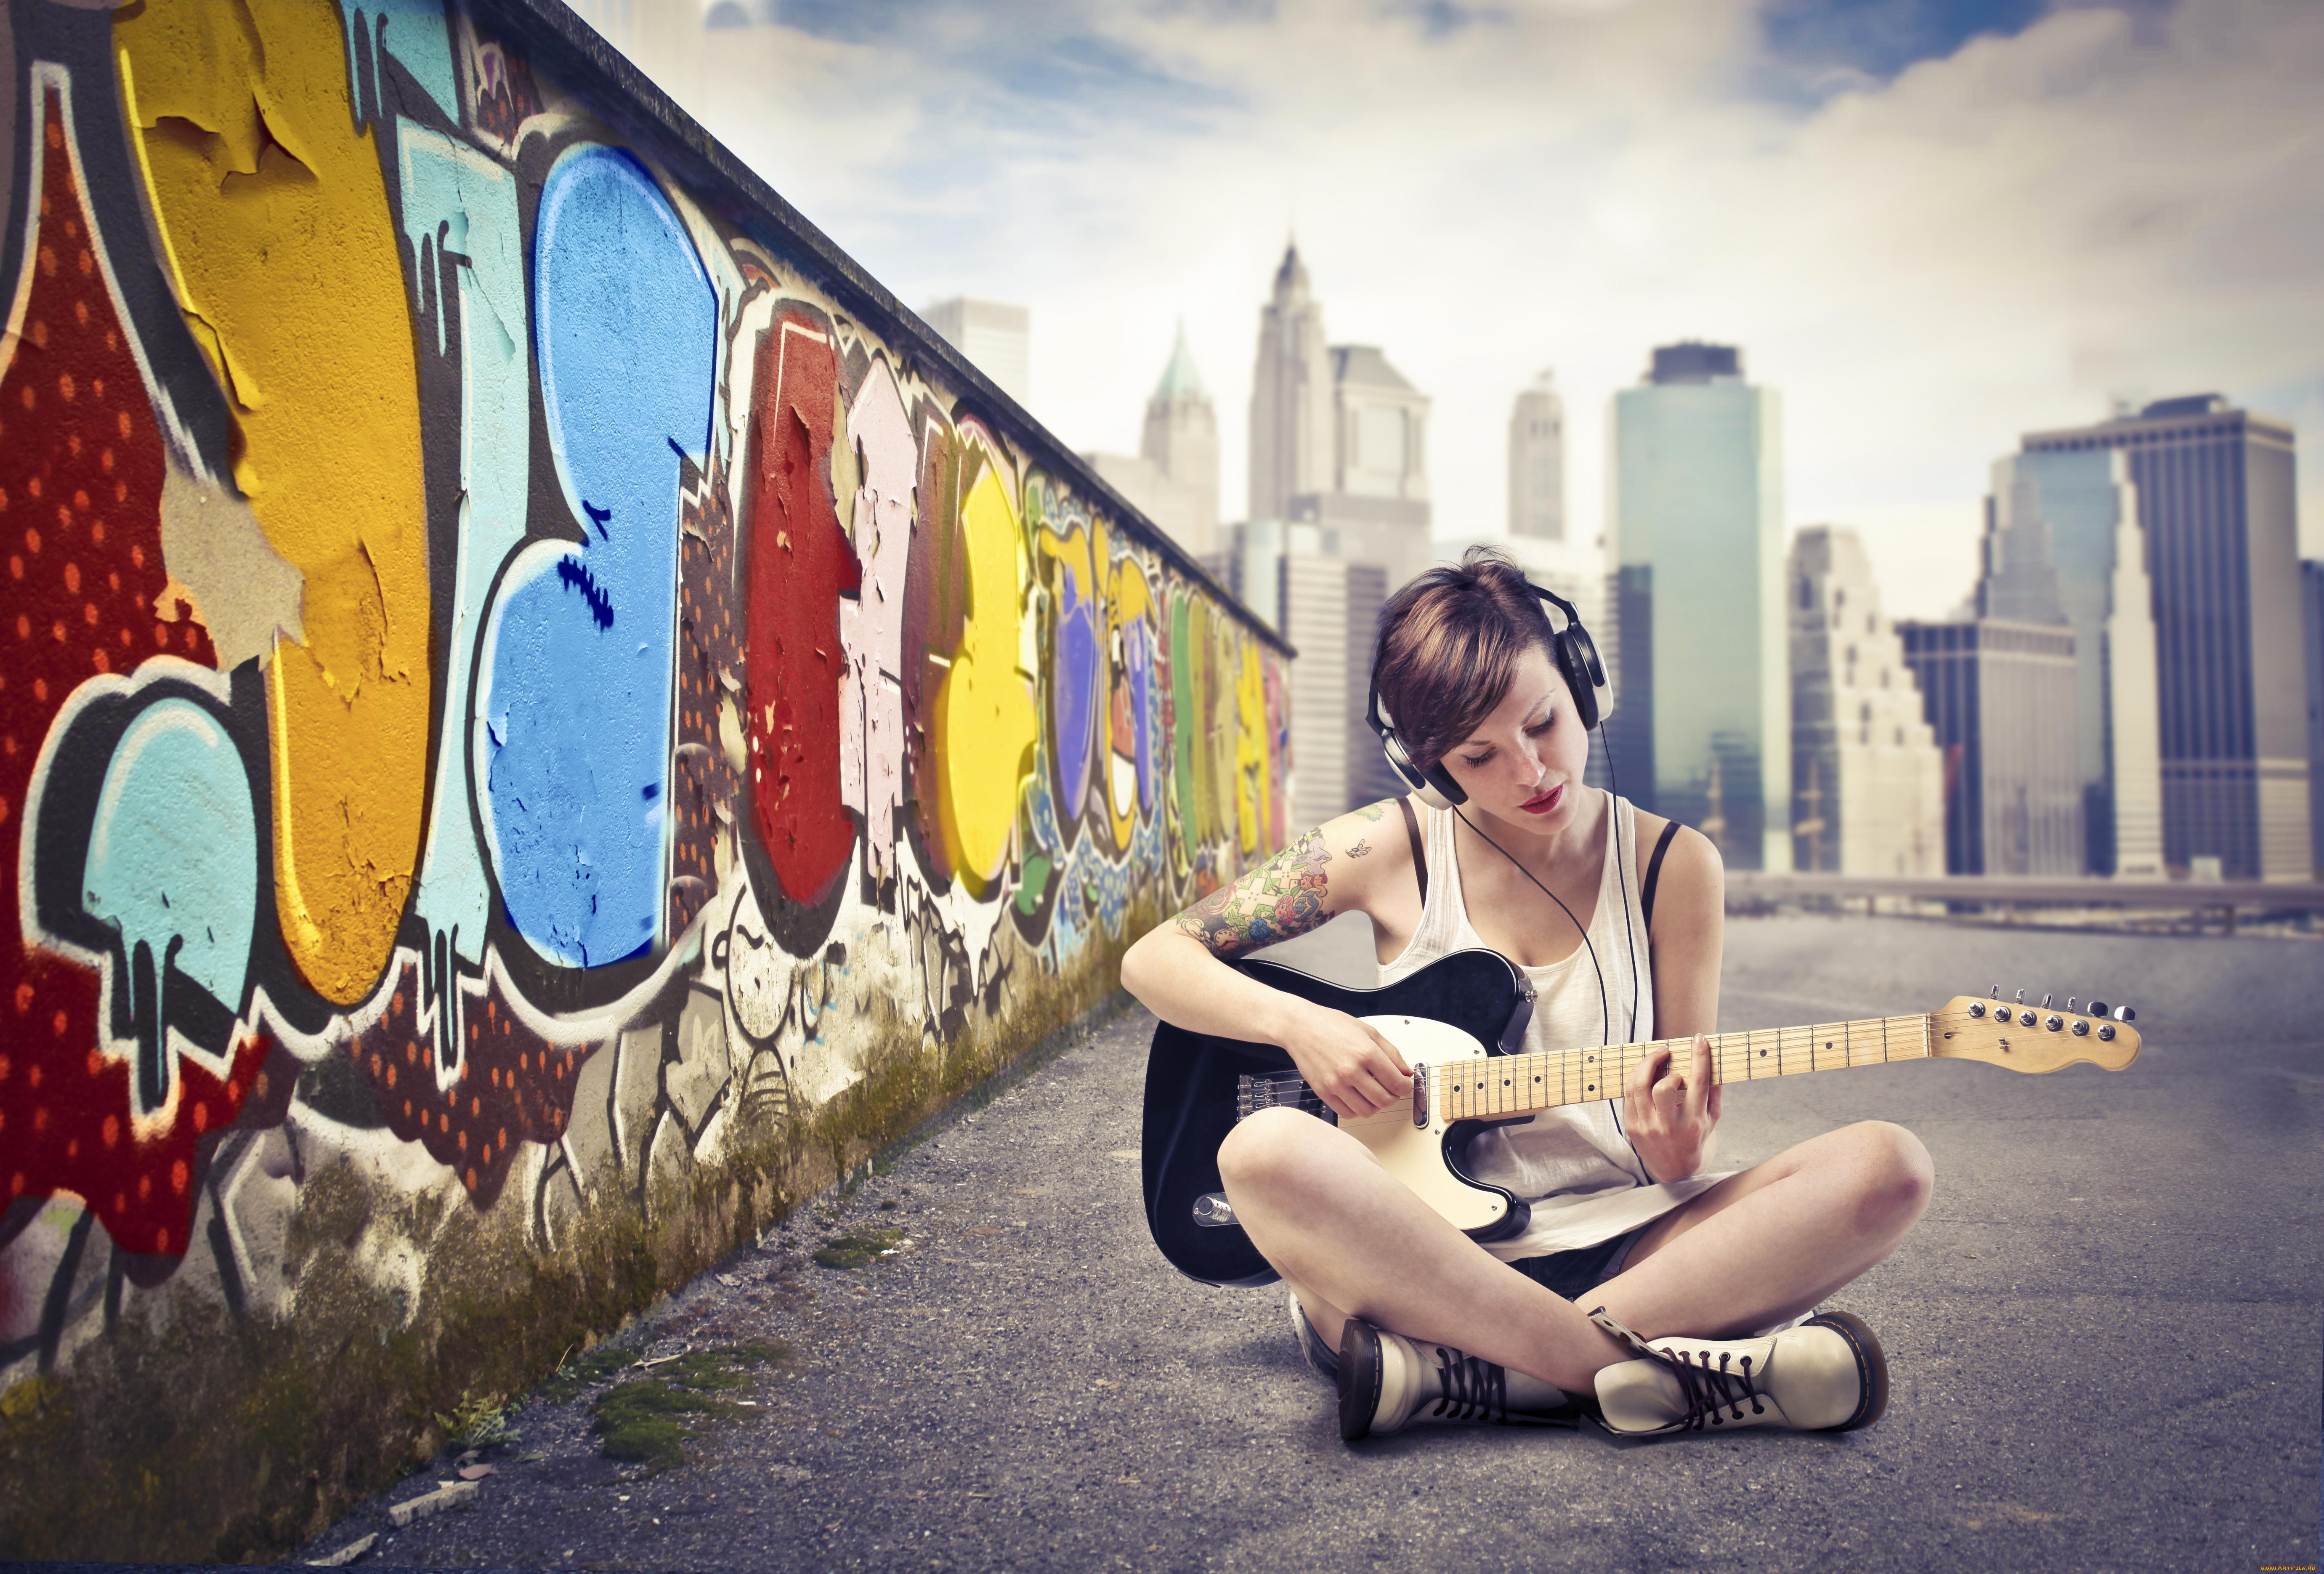 Девушка по городу mp3. Обои молодежные. Фотосессия с граффити. Граффити девушка. Девушка сидит с гитарой.